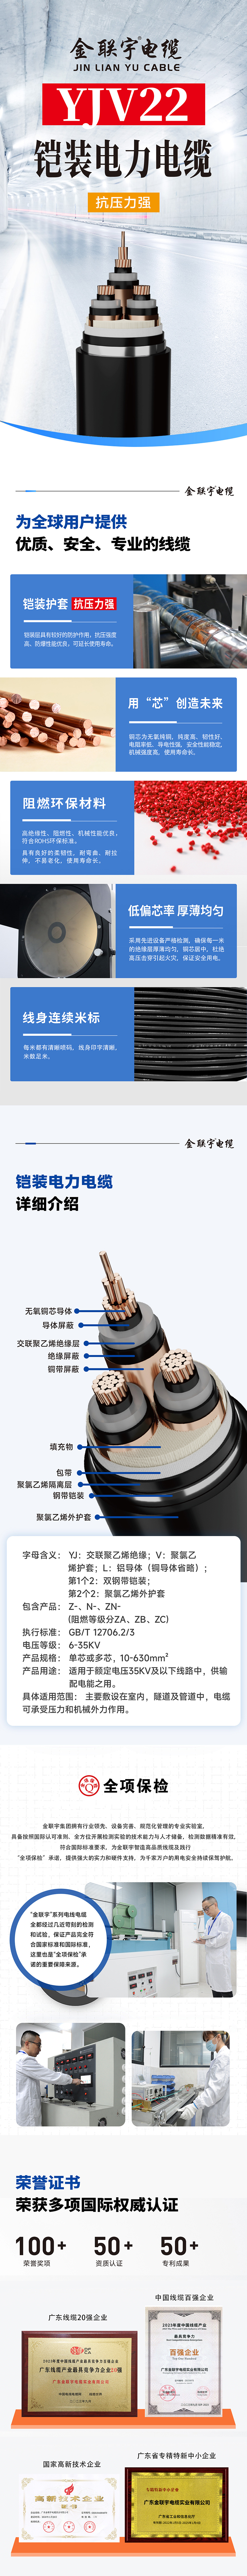 详情页-电力电缆YJV22.jpg